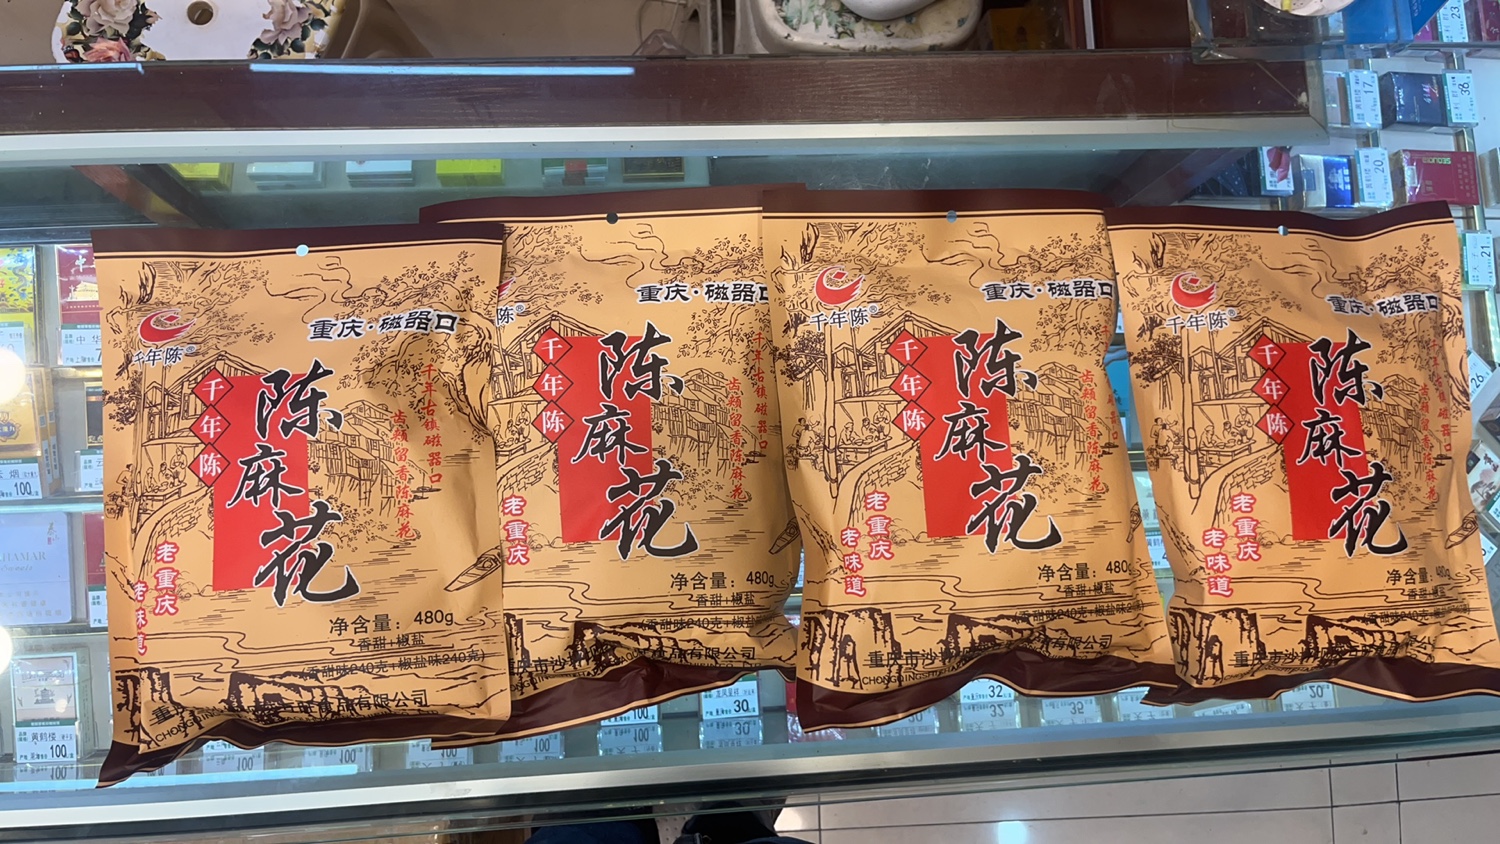 重庆特产磁器口古镇千年陈480克陈麻花香甜椒盐混合包装